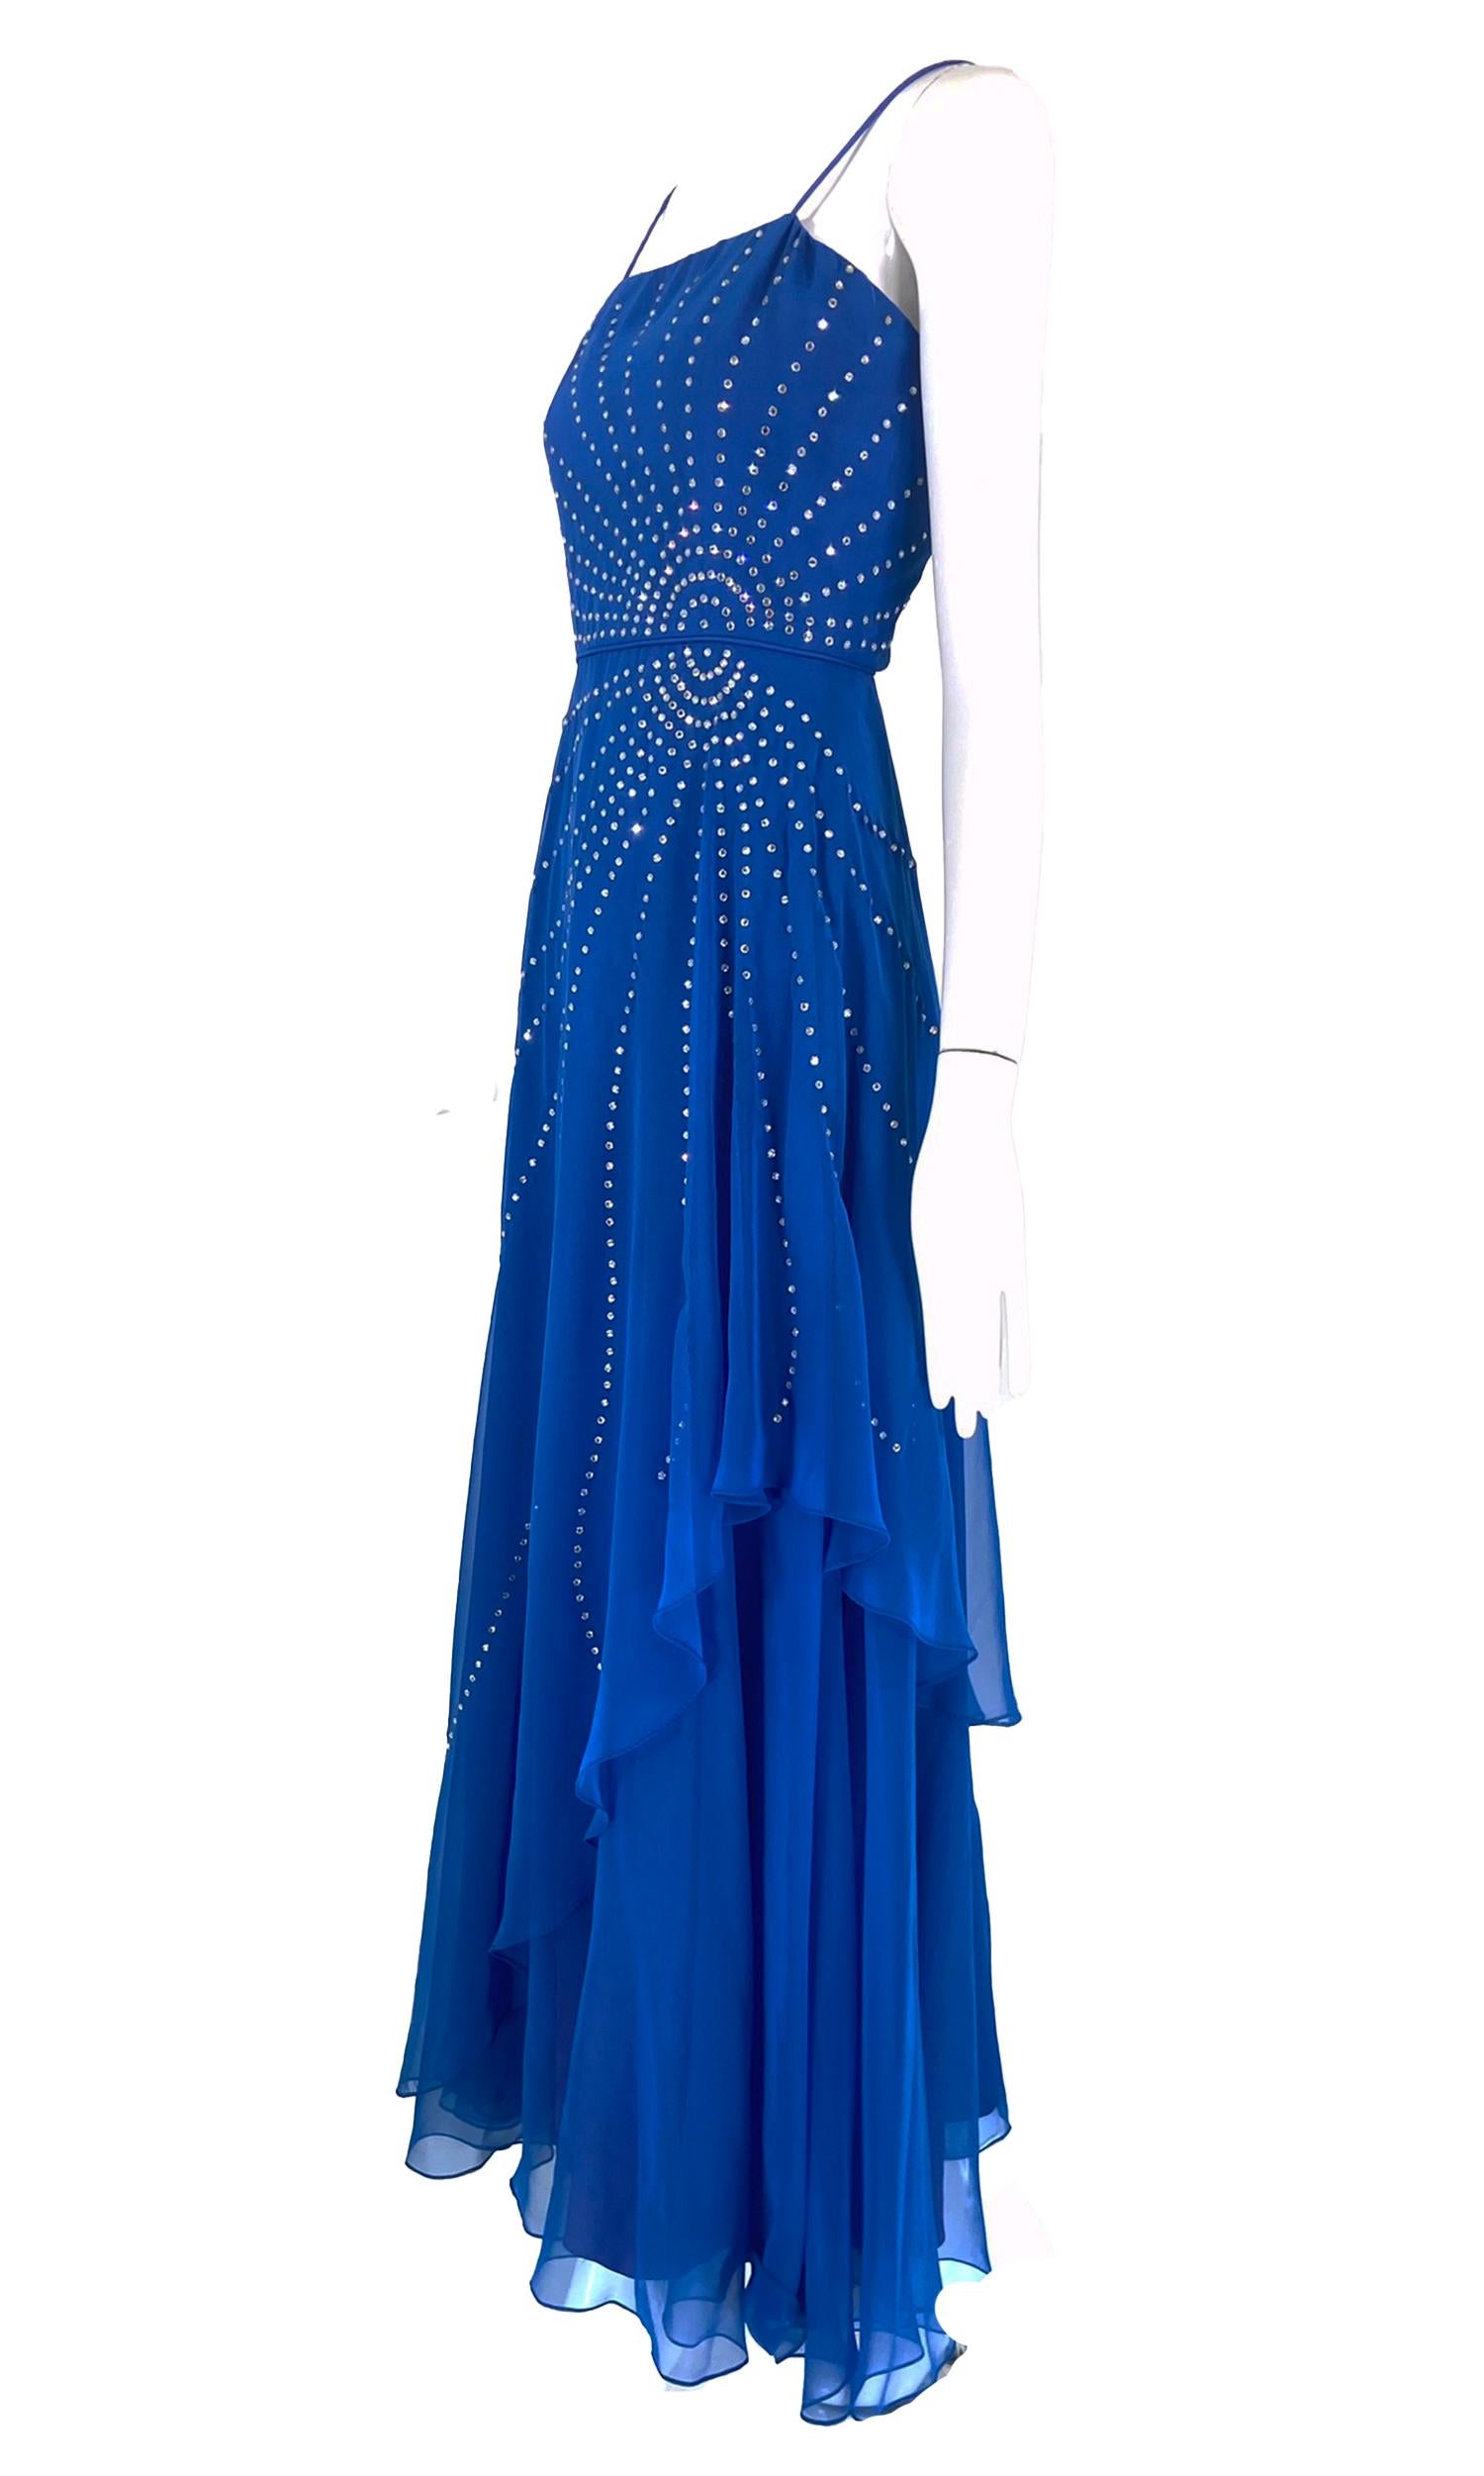 Robe de soirée Rose Taft Couture Fashions en mousseline de soie bleu royal, avec strass et soleil, datant des années 1970. Cette robe au corsage ajusté et aux bretelles spaghetti a une allure des années 1940. Les strass en cristal sertis sont